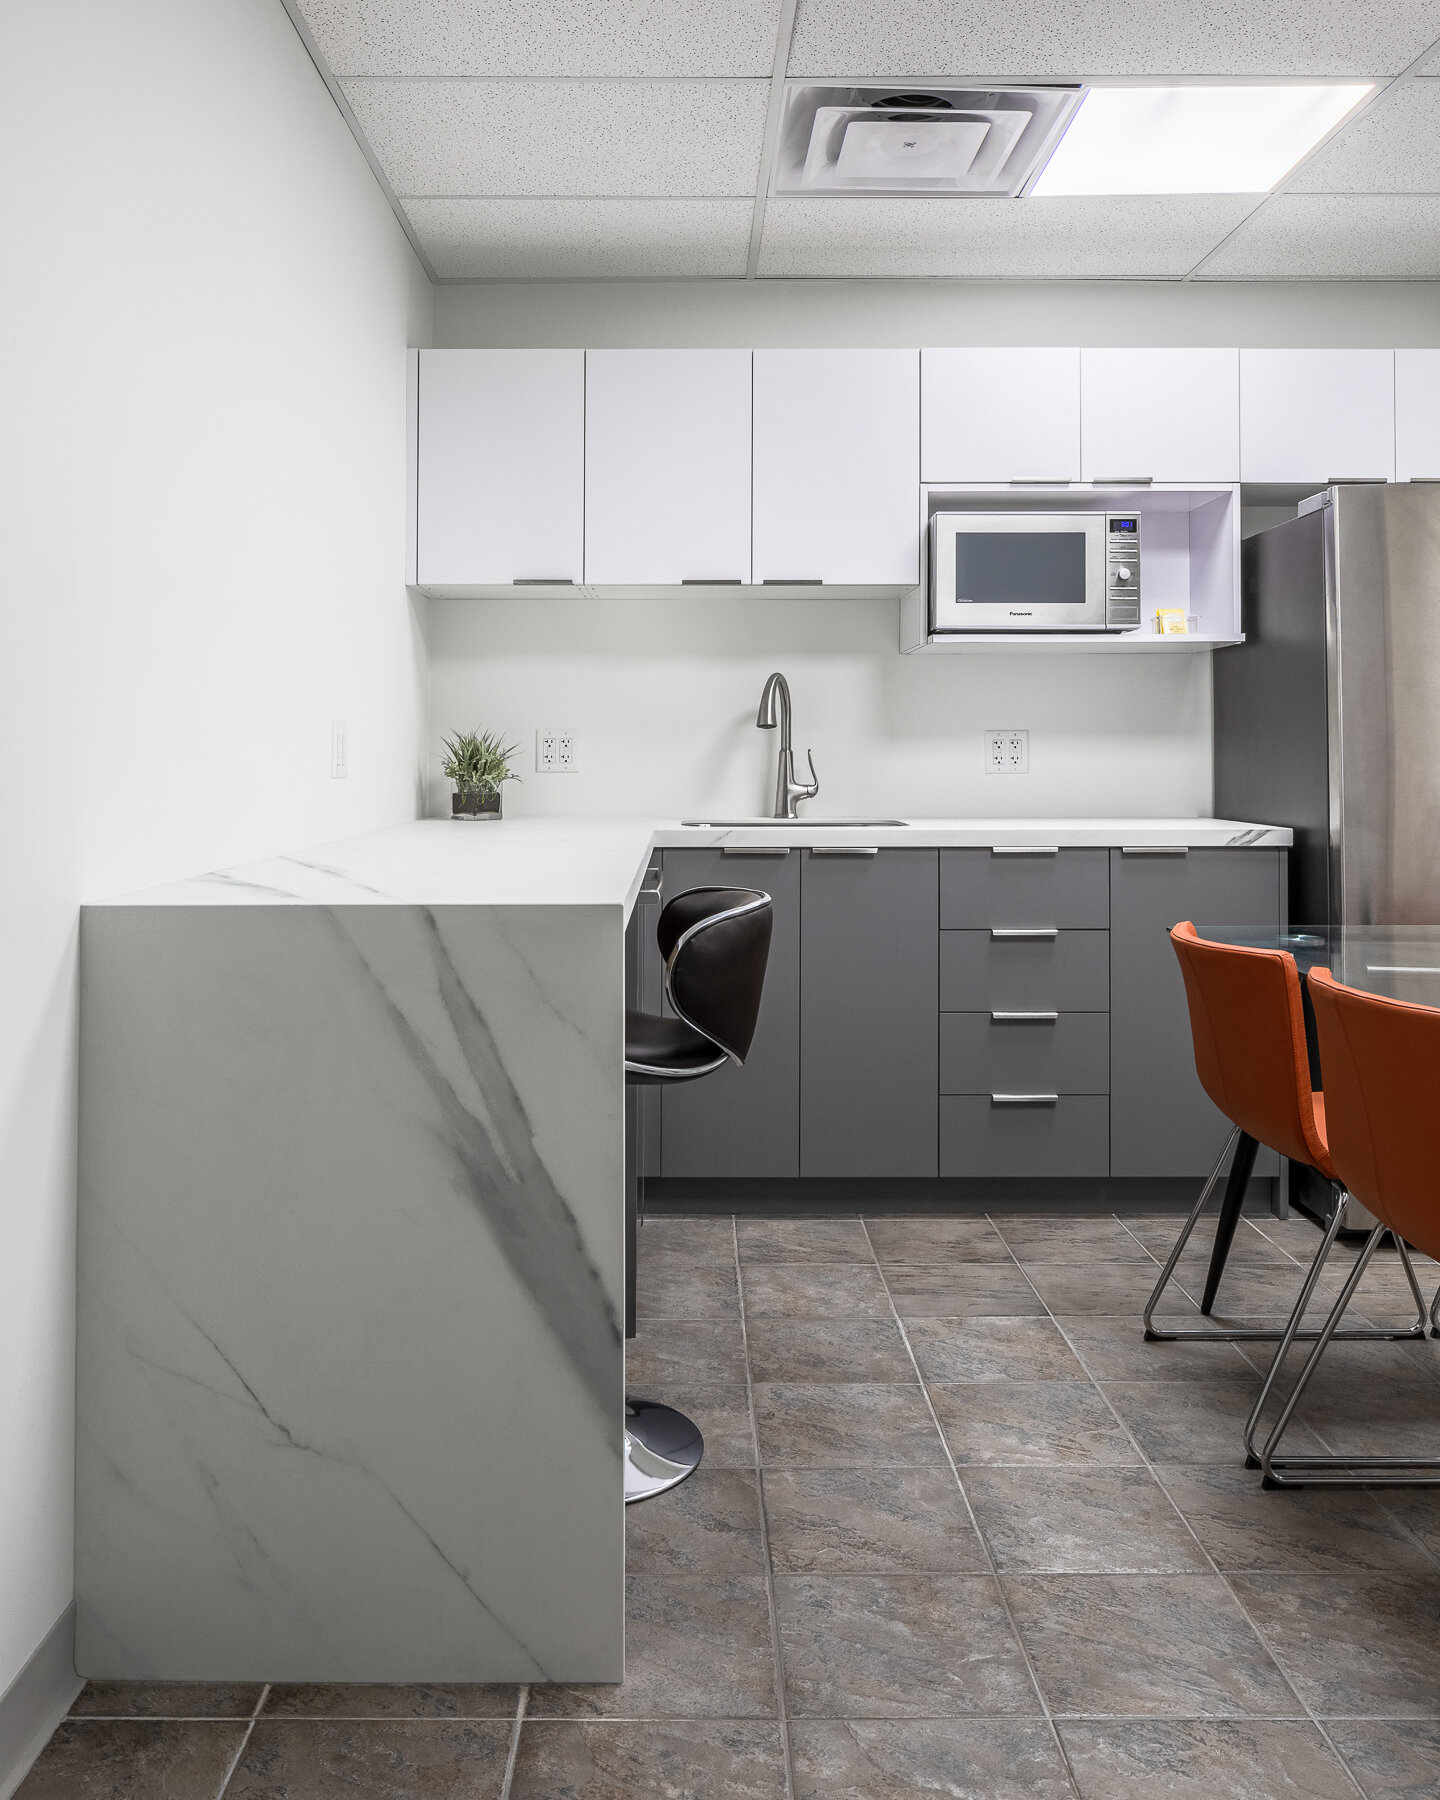 18 wynford doctors office kitchen design